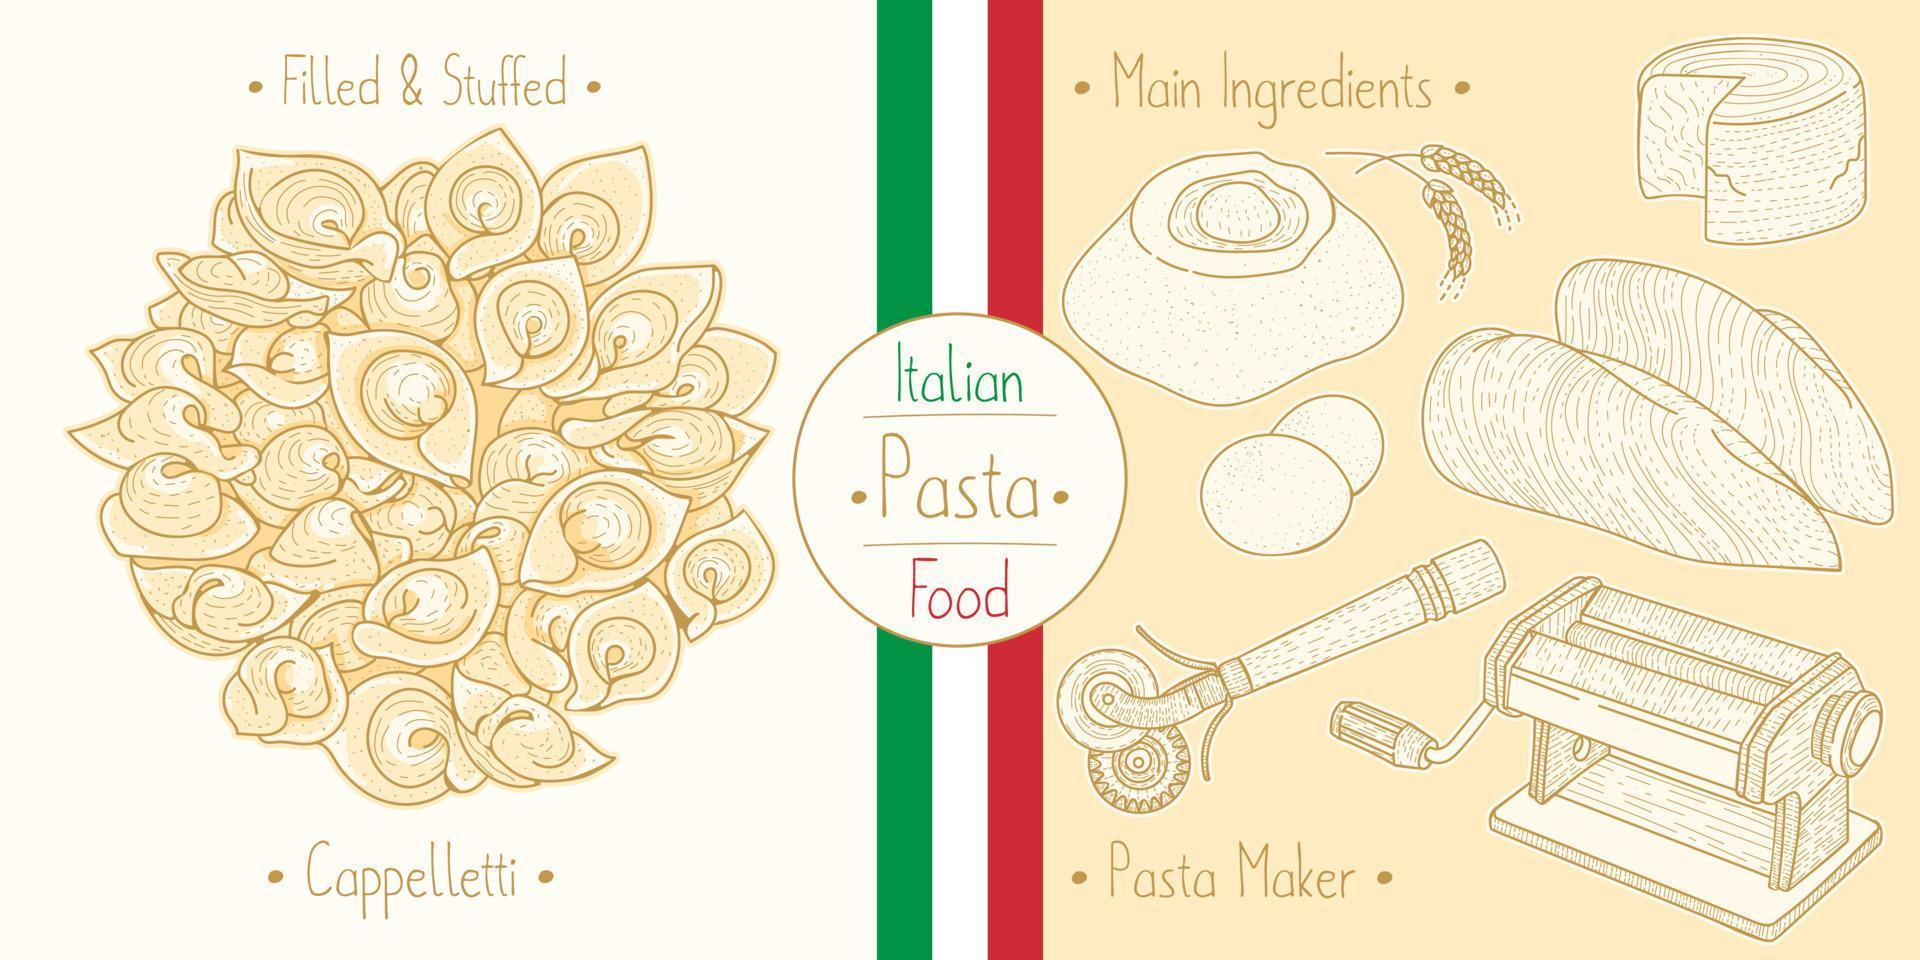 cocinar comida italiana pasta de cabello de ángel capellini e ingredientes principales y equipos para hacer pasta, dibujar ilustraciones en estilo antiguo vector